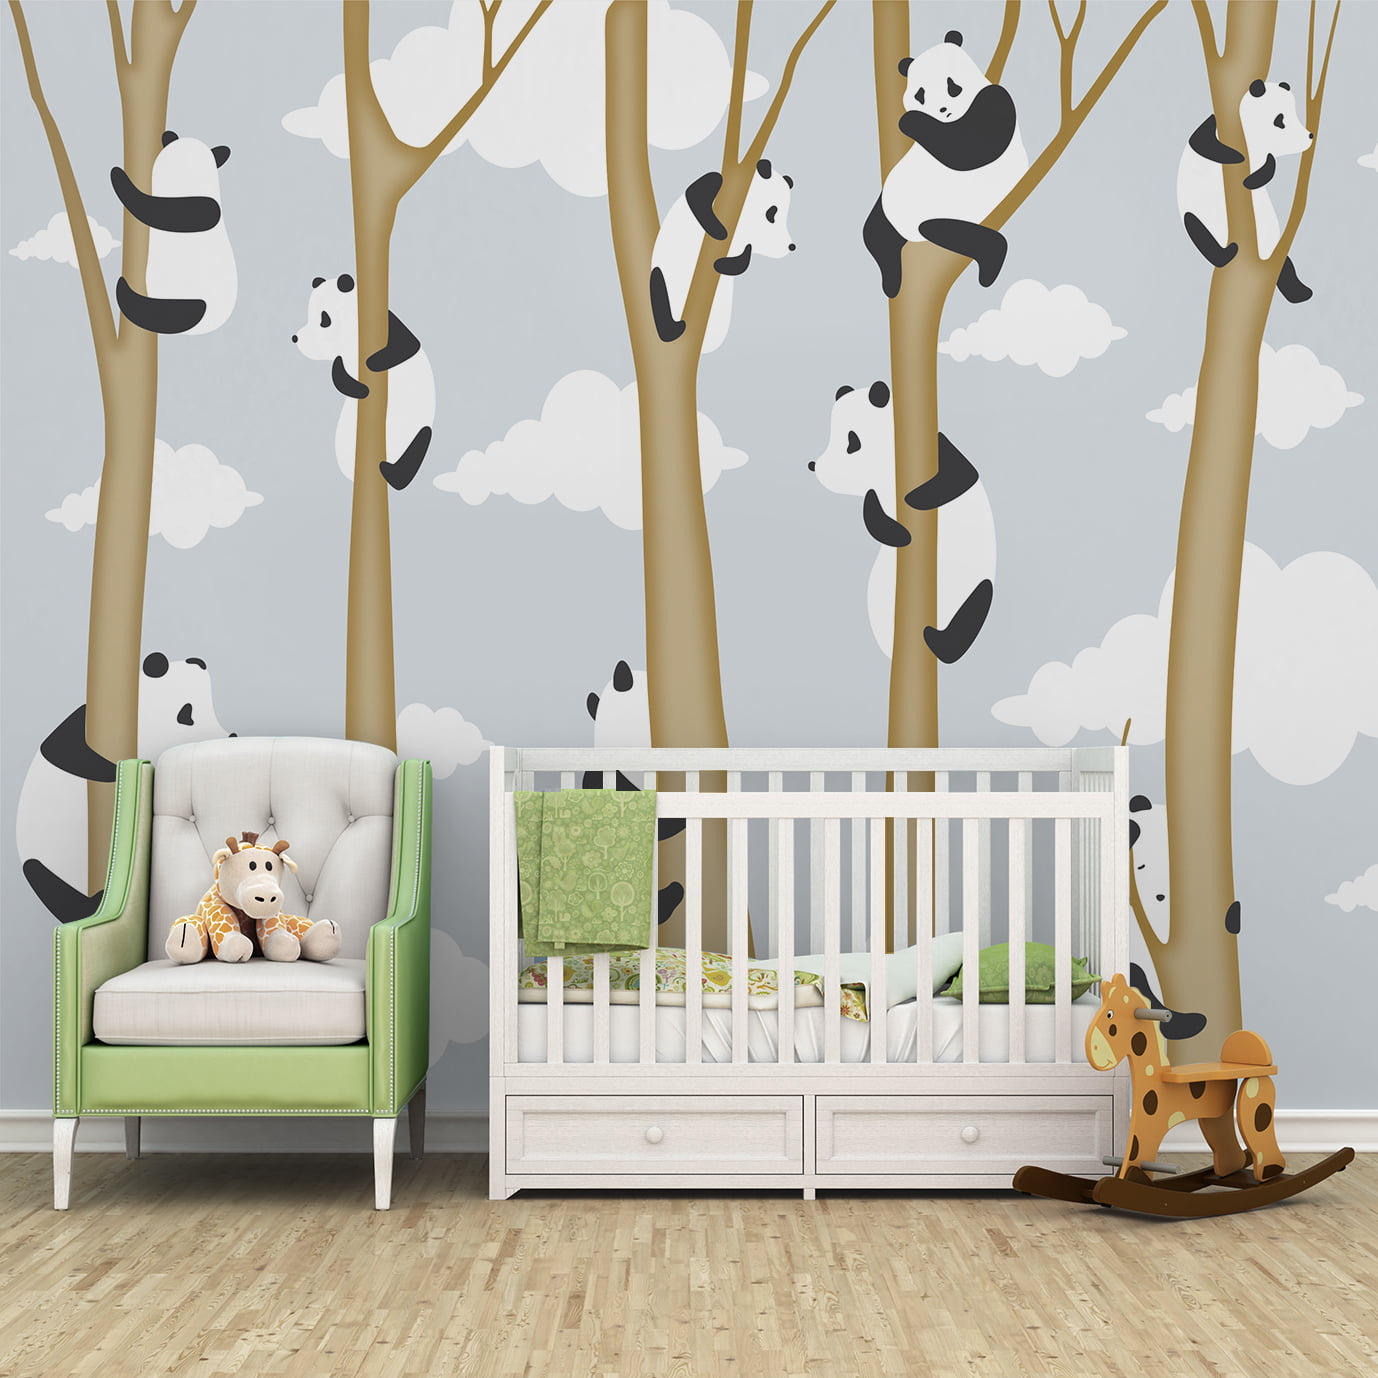 Adesivo de parede árvore com ursos panda